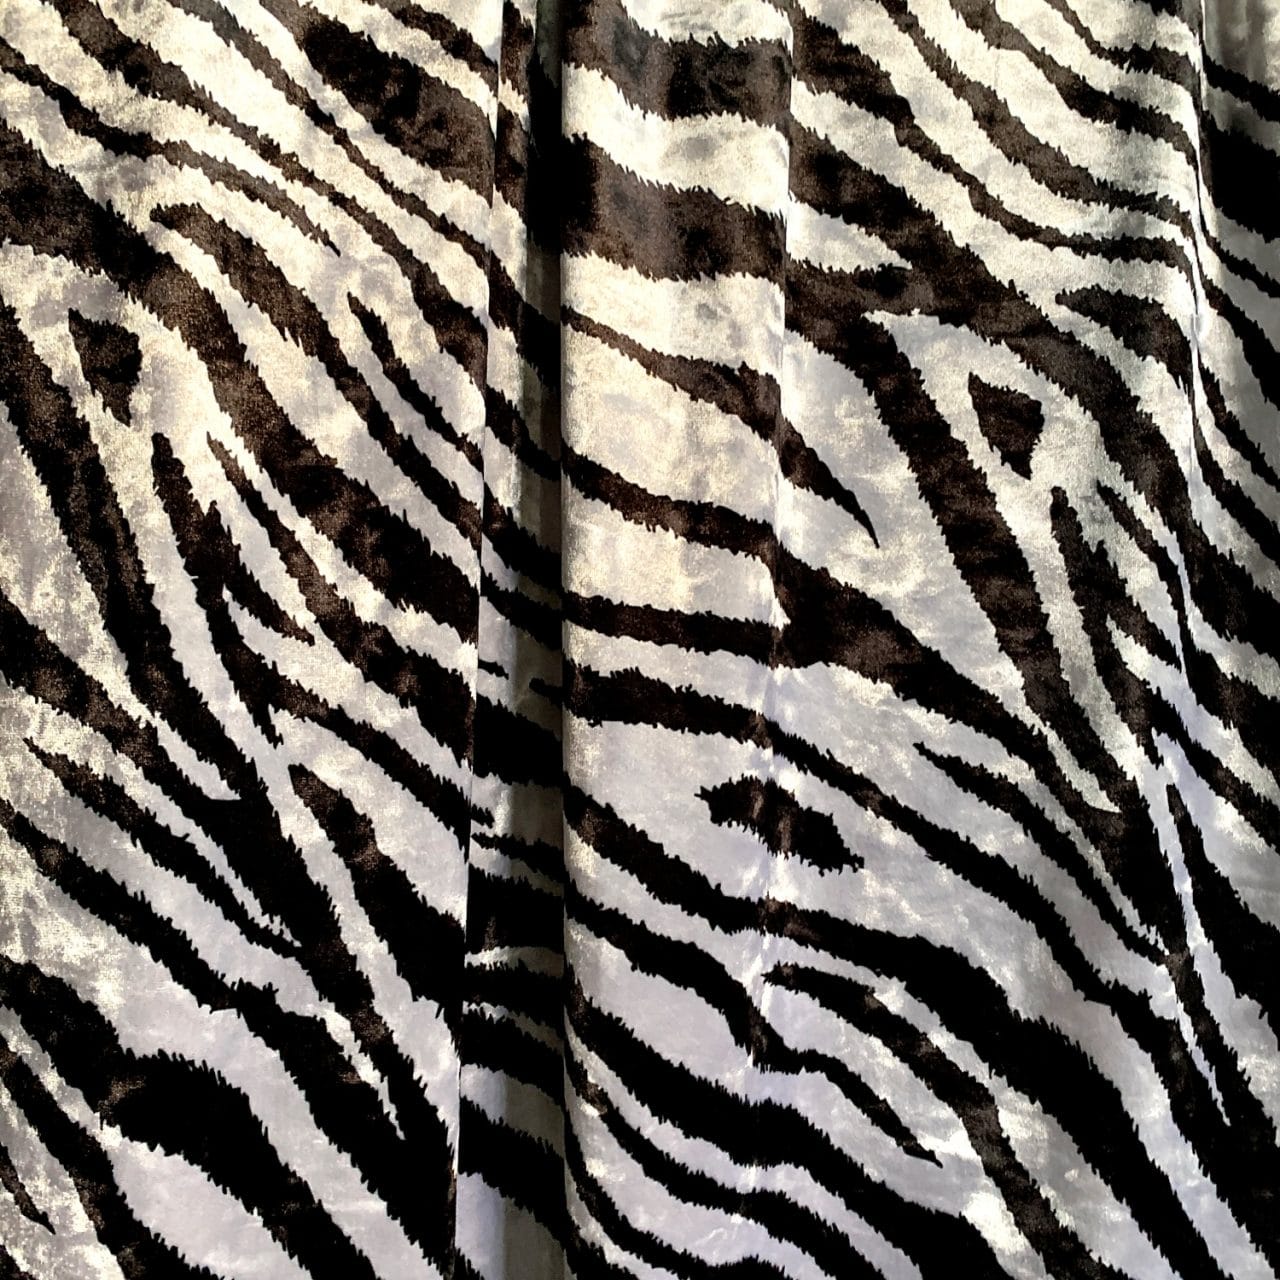 Zebra Print Crushed Velvet Fabric